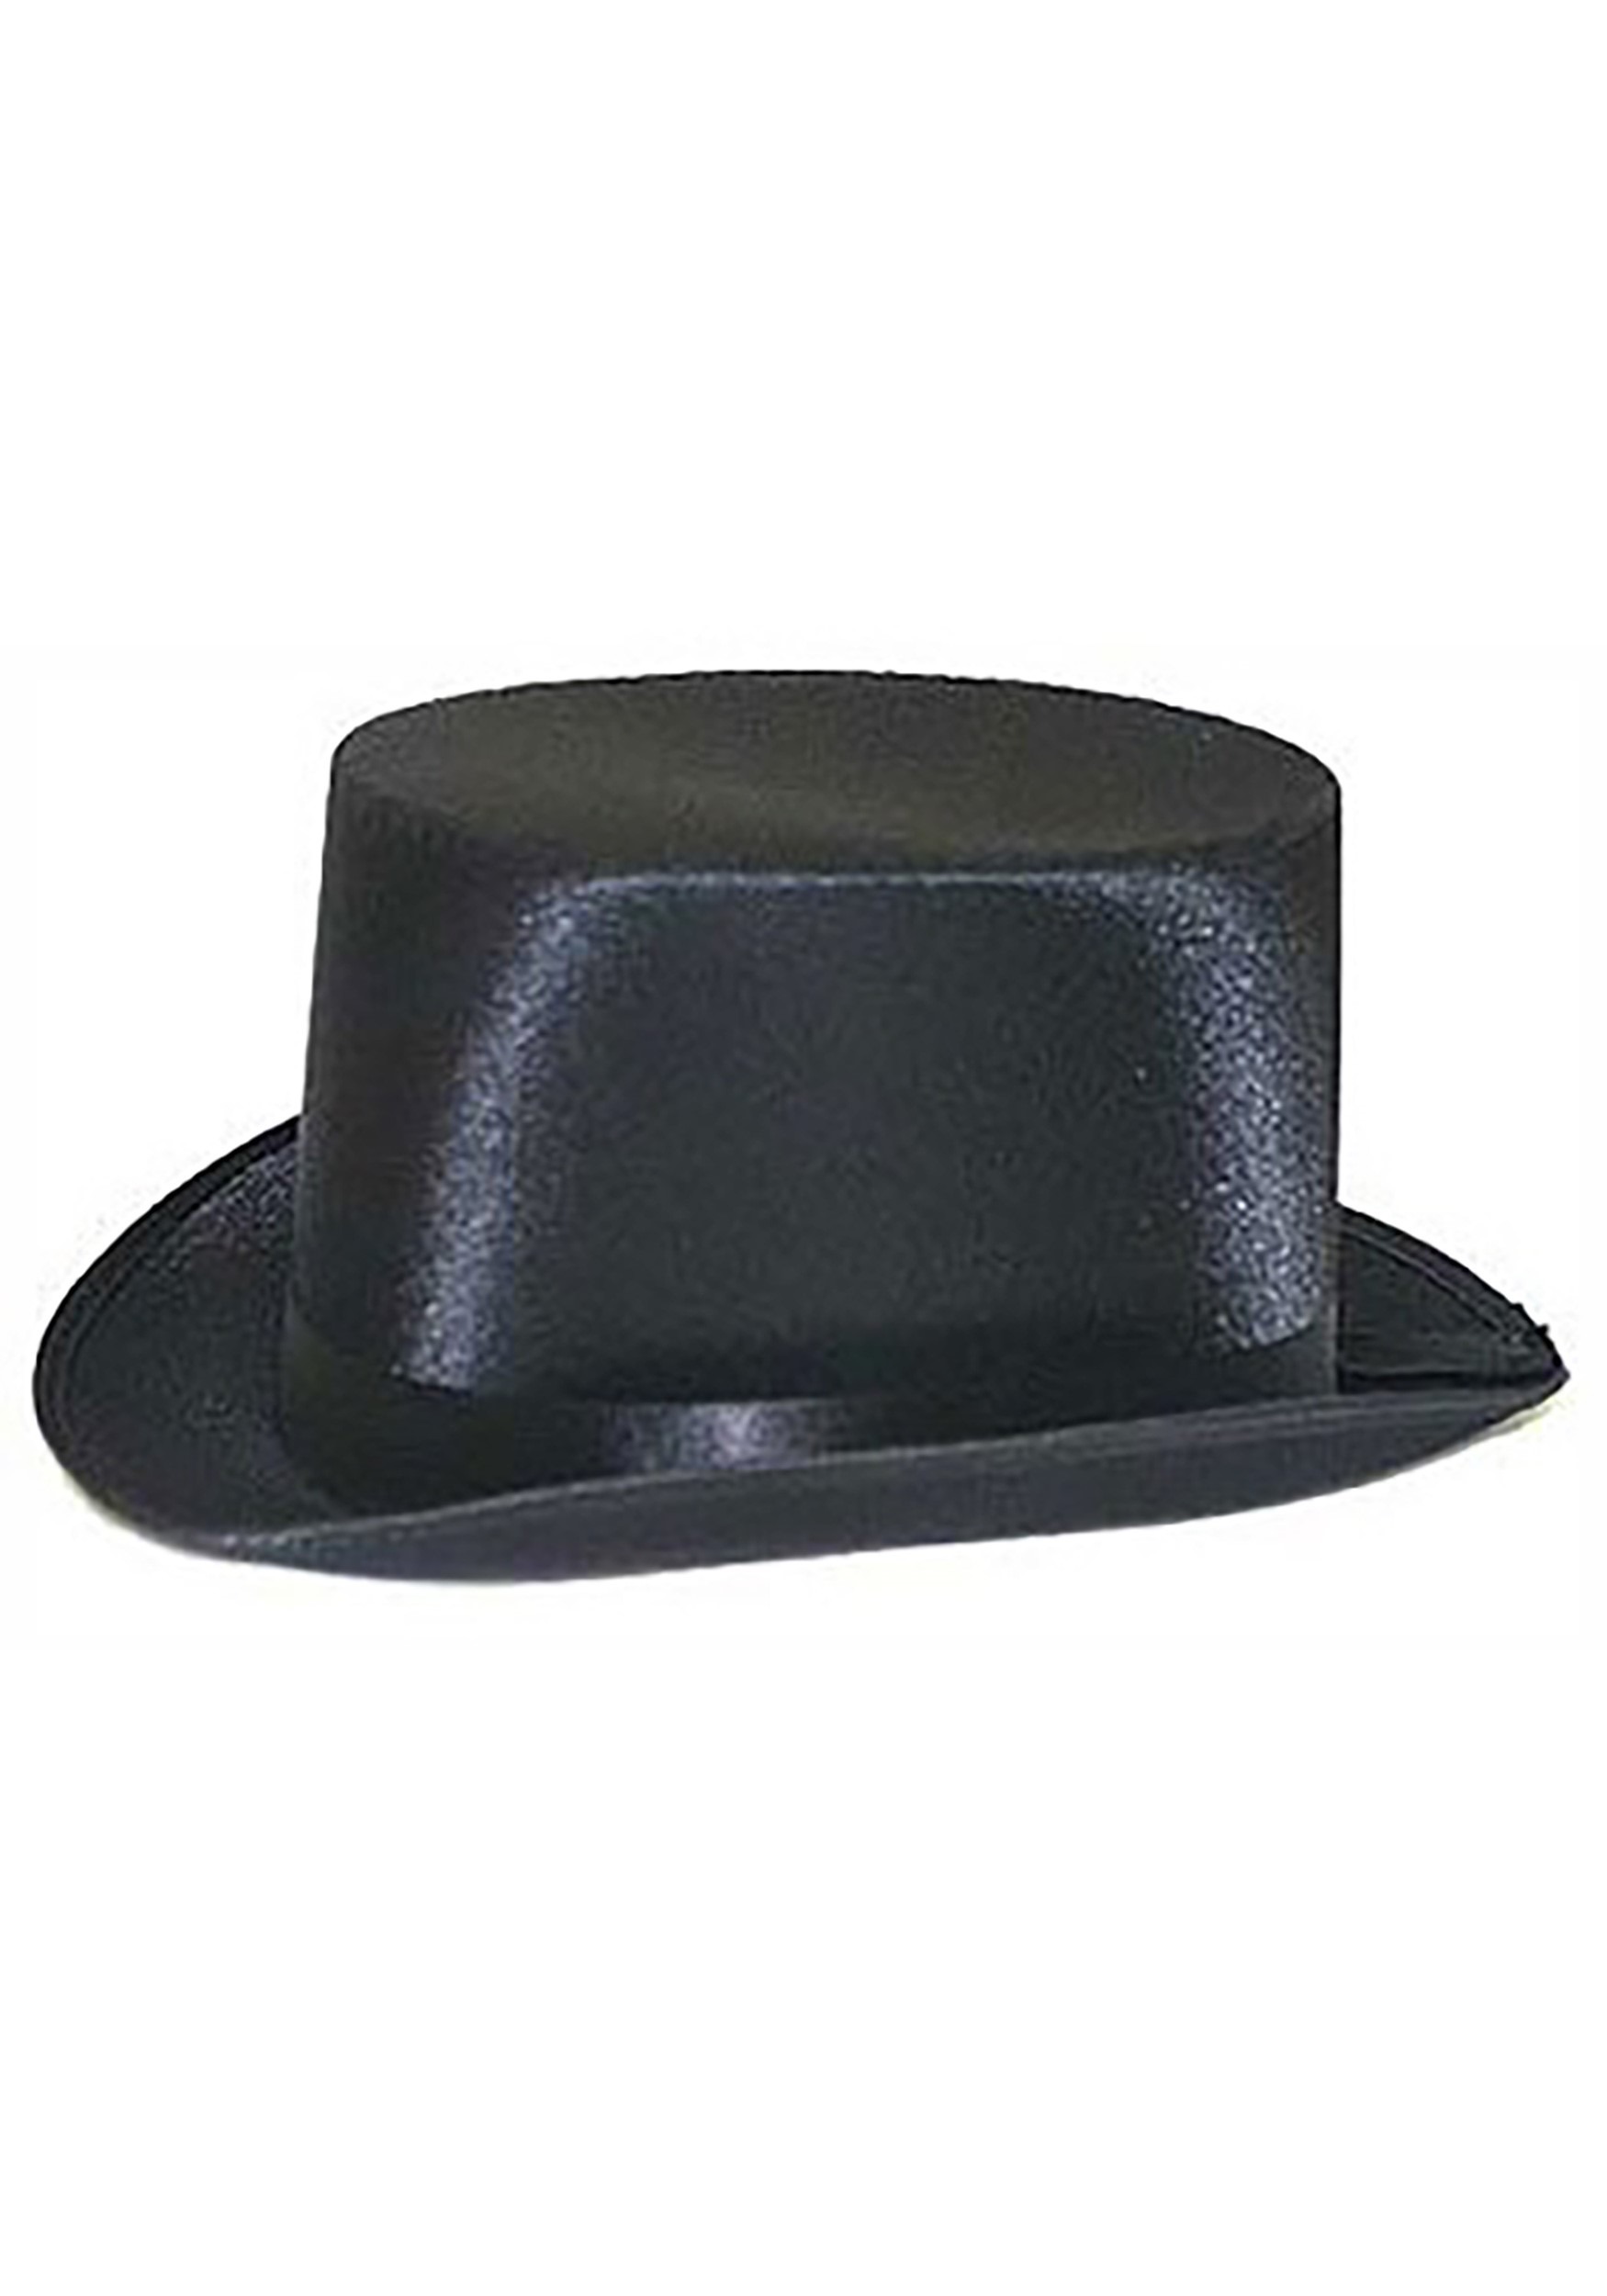 Black Top Hat Costume Party Hats Men Women ajzdnzvr Teens Adults Black Top Hat